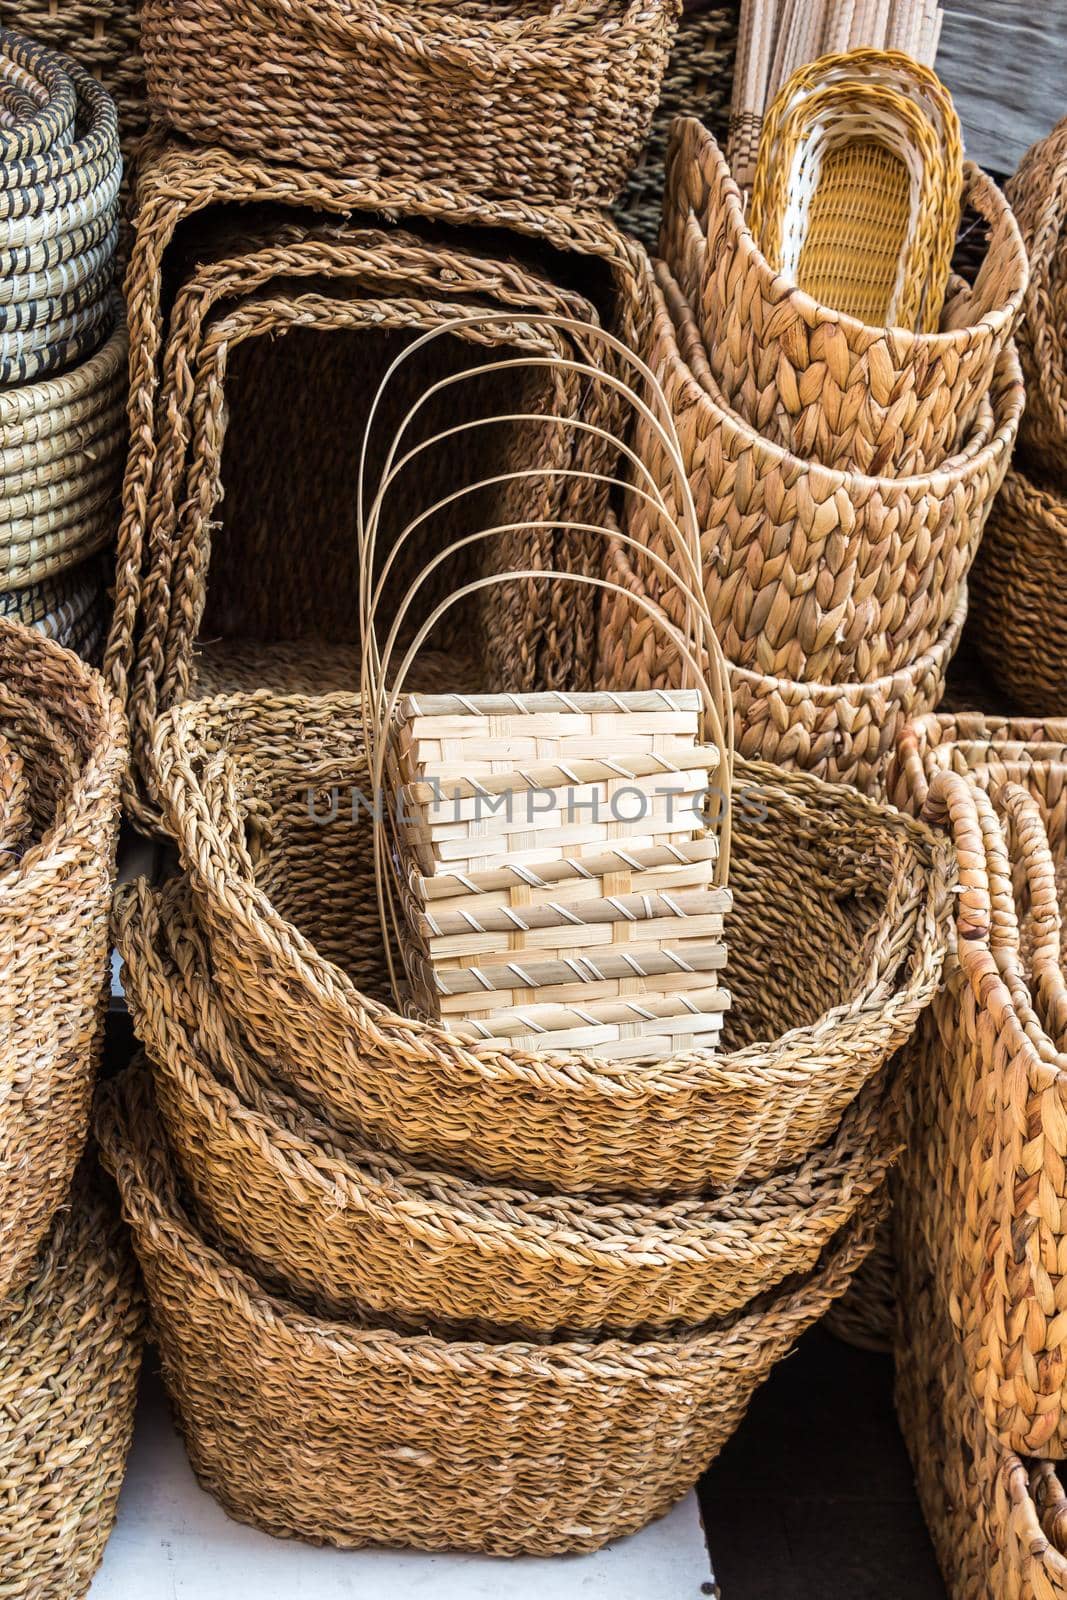 Empty wicker baskets for sale in a market place by berkay